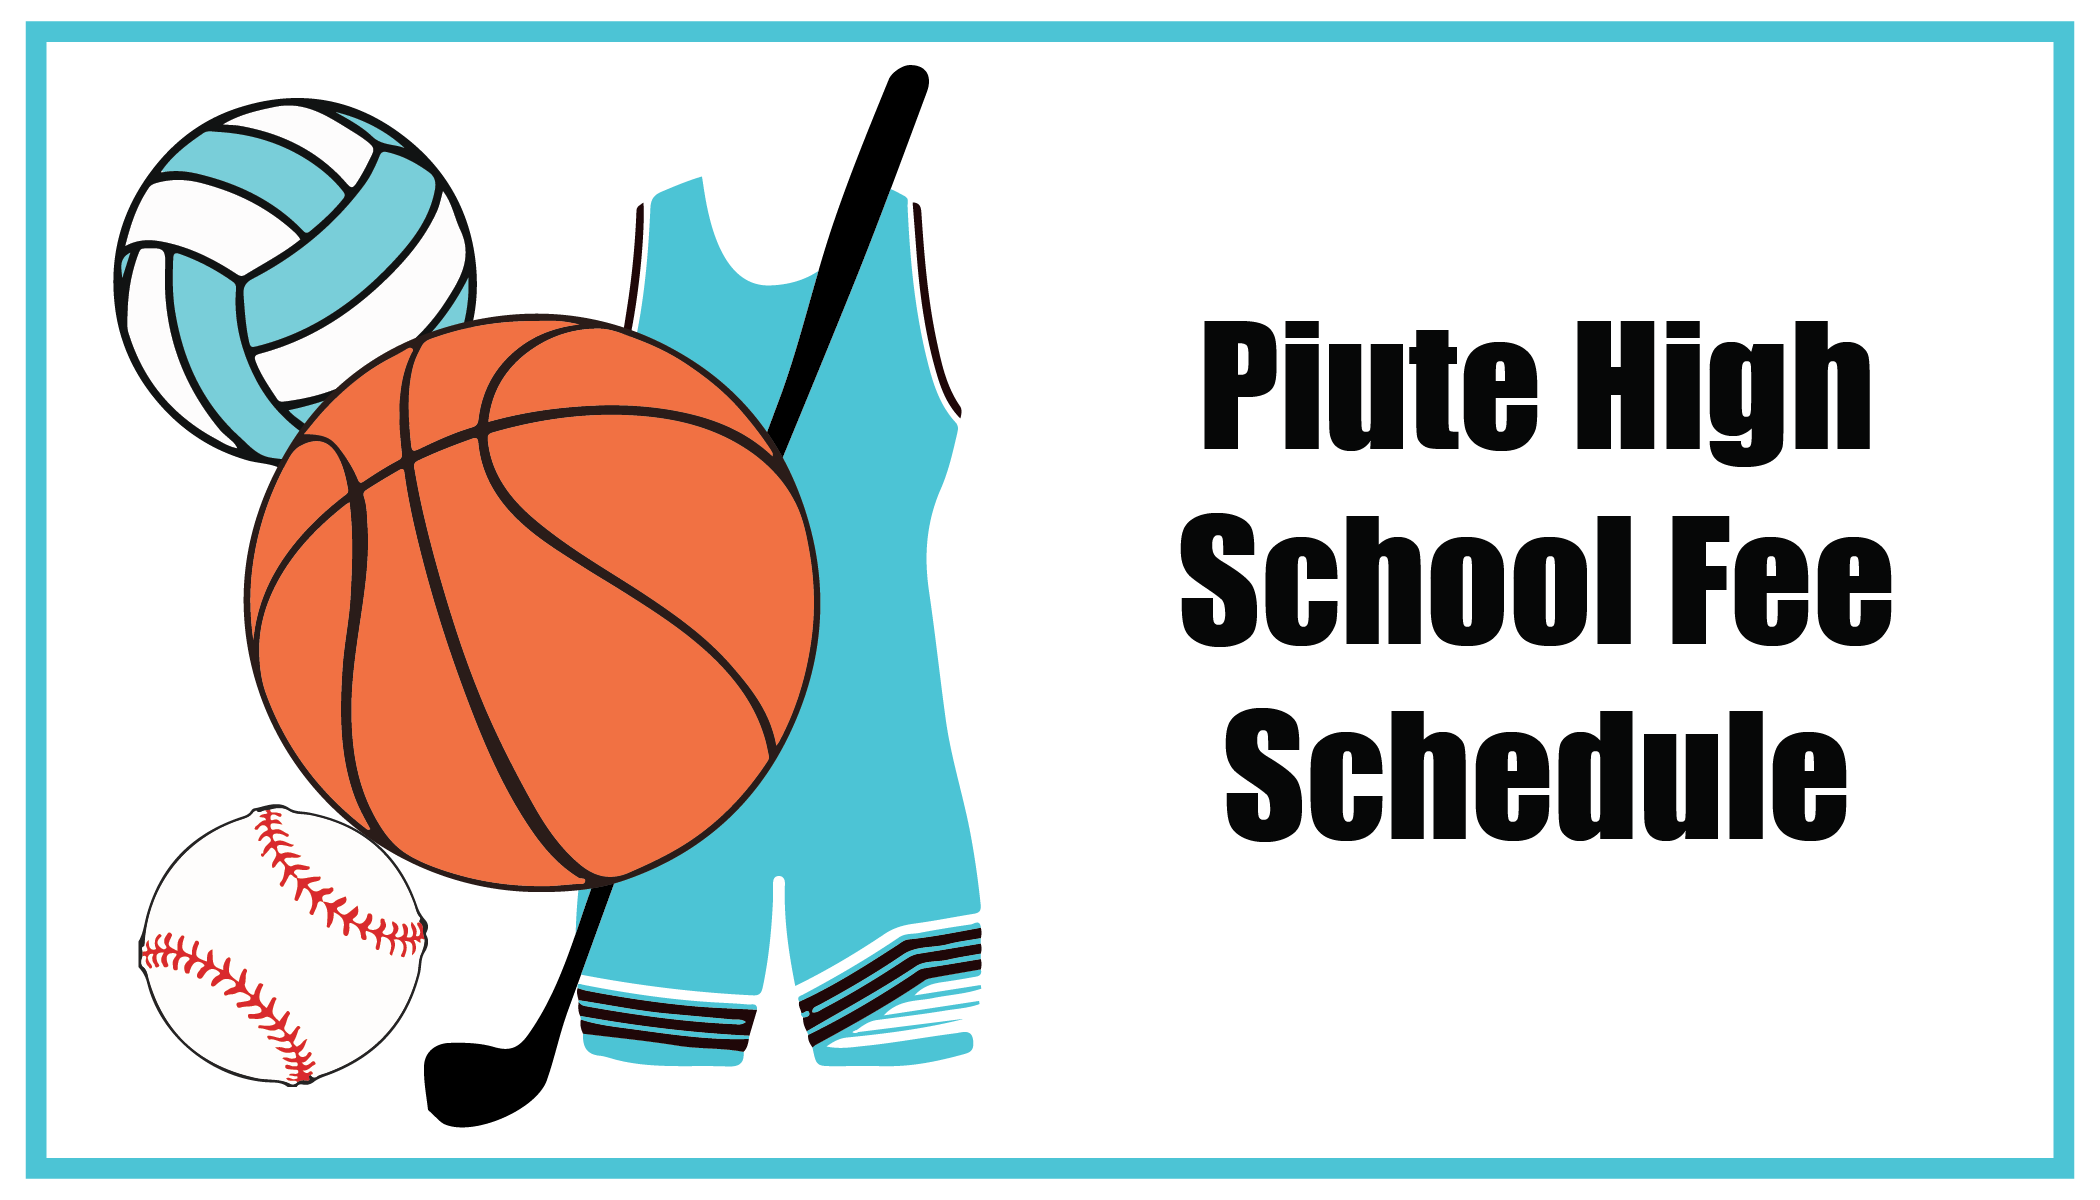 Piute High School Fee Schedule 2022-2023